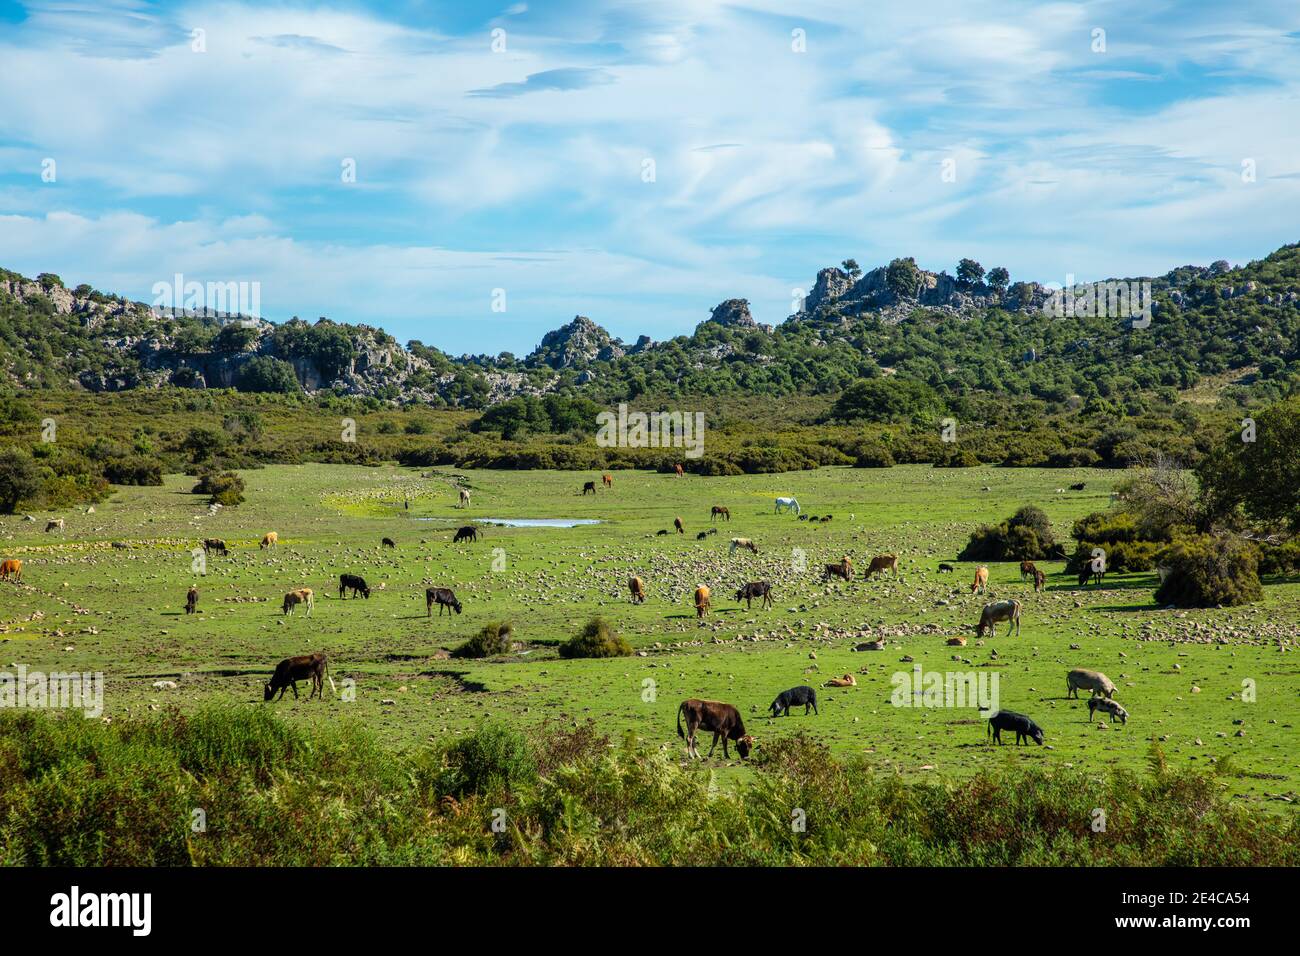 Italien, Sardinien. Eine Lichtung mit Wildtieren wie Schweinen, Rindern, Pferden. Diese Alm liegt in den Bergen des Naturparks Parco del Golfo di Orosei e del Gennargentu. Stockfoto